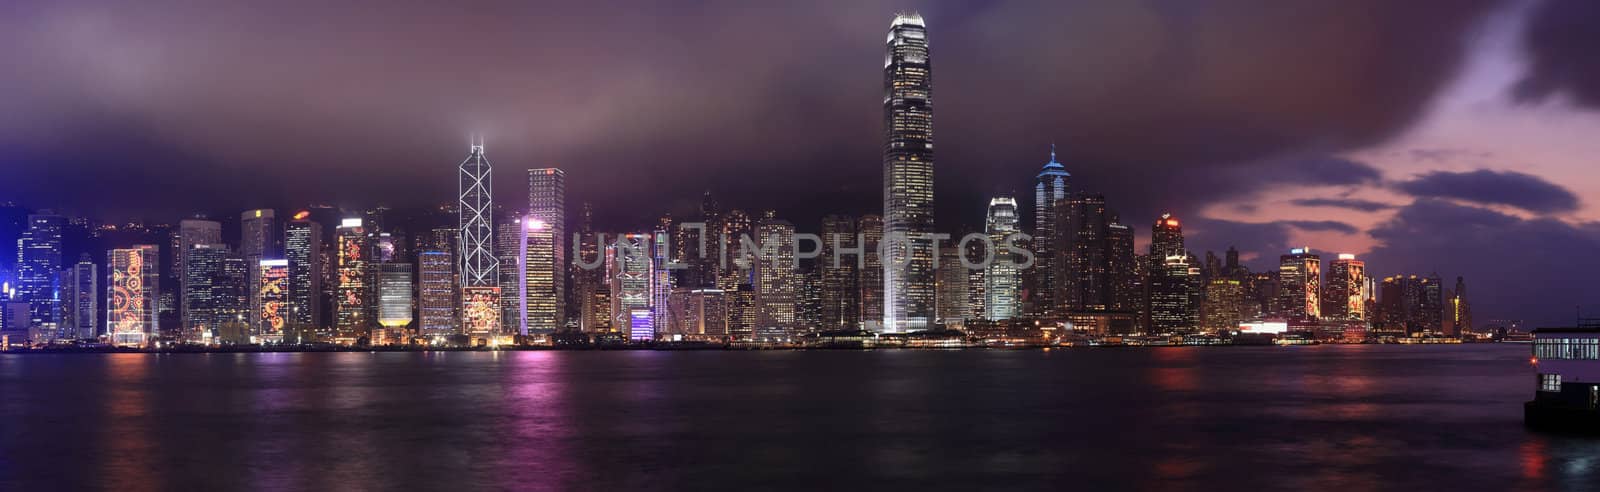 Hong Kong at night panorama by leungchopan